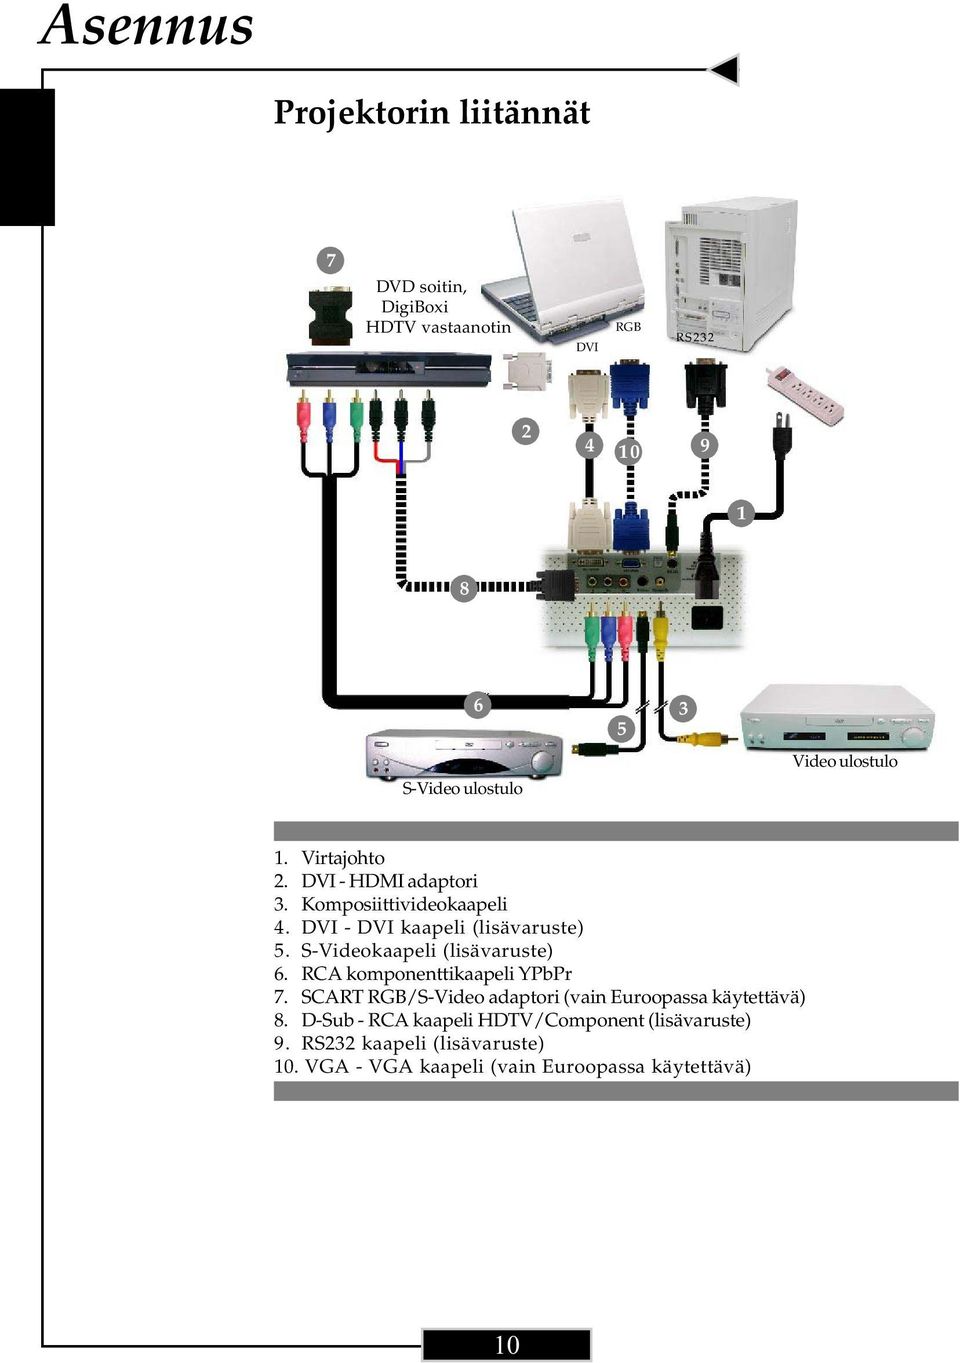 DVI - DVI kaapeli (lisävaruste) 5. S-Videokaapeli (lisävaruste) 6. RCA komponenttikaapeli YPbPr 7.